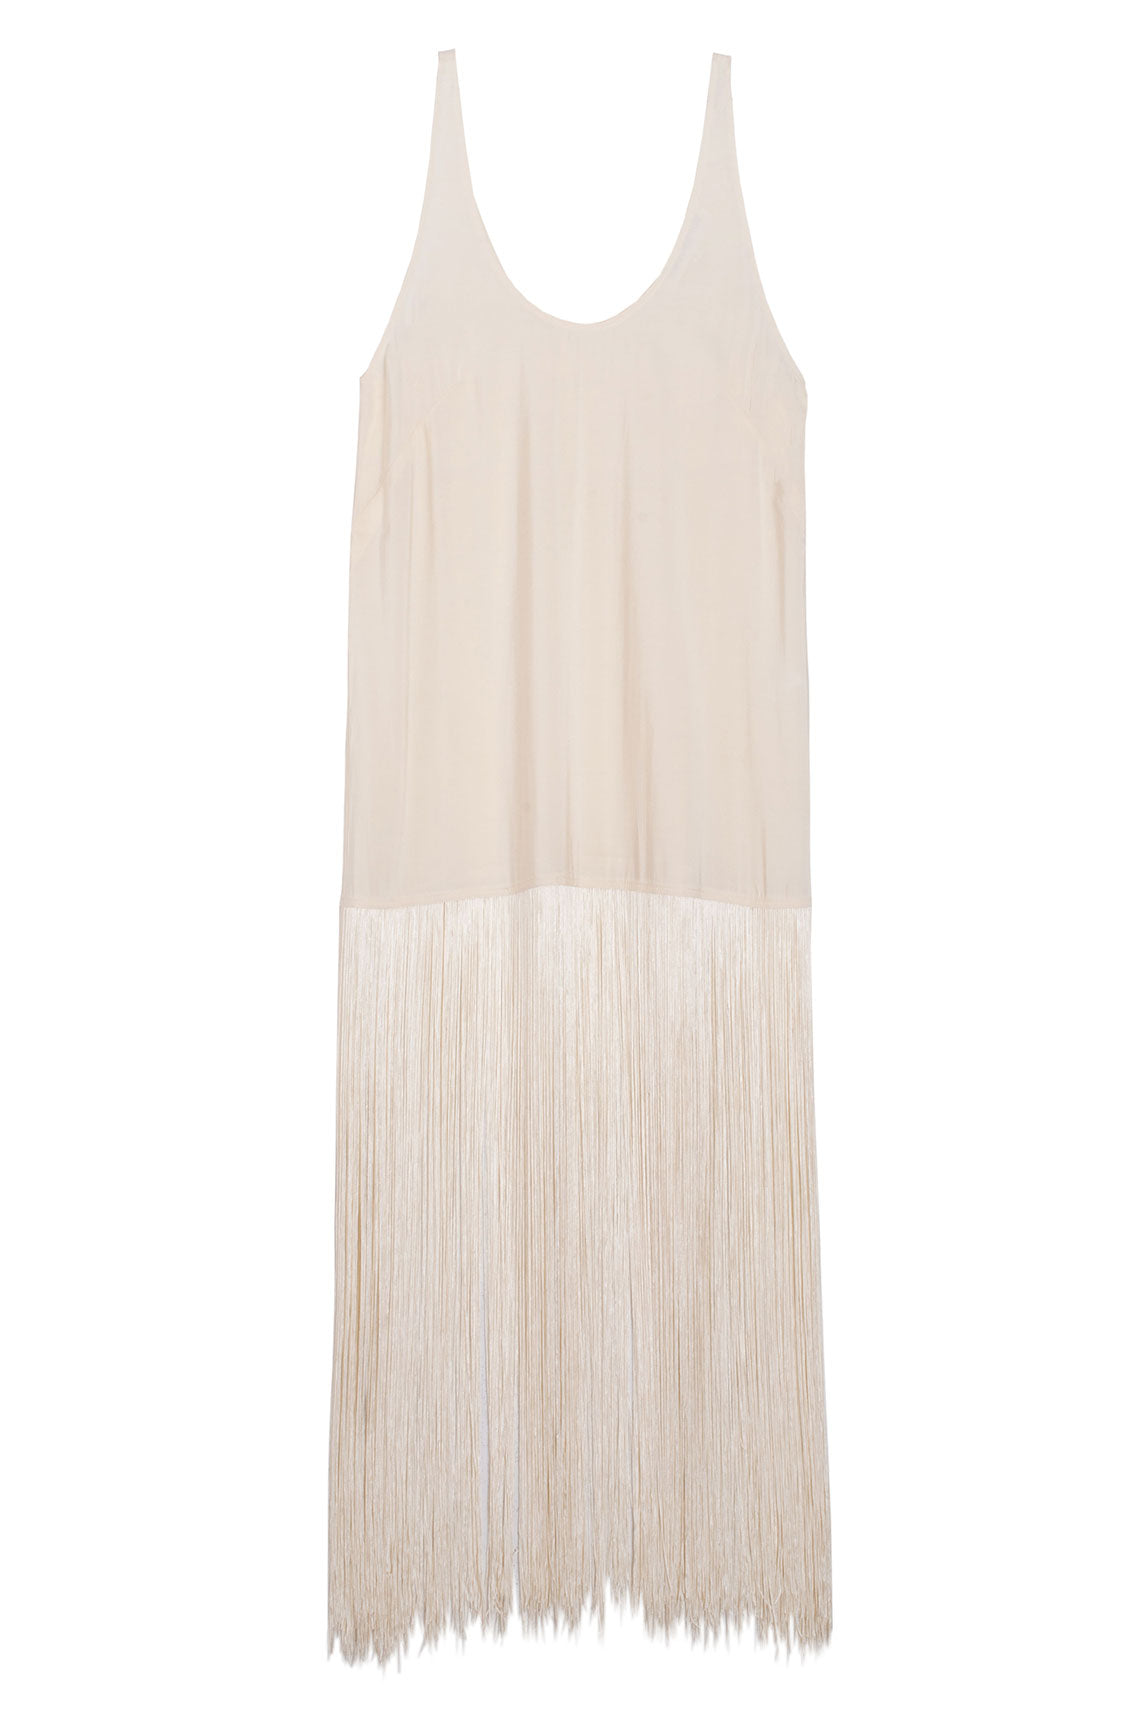 Ivory Tassel Slip Dress